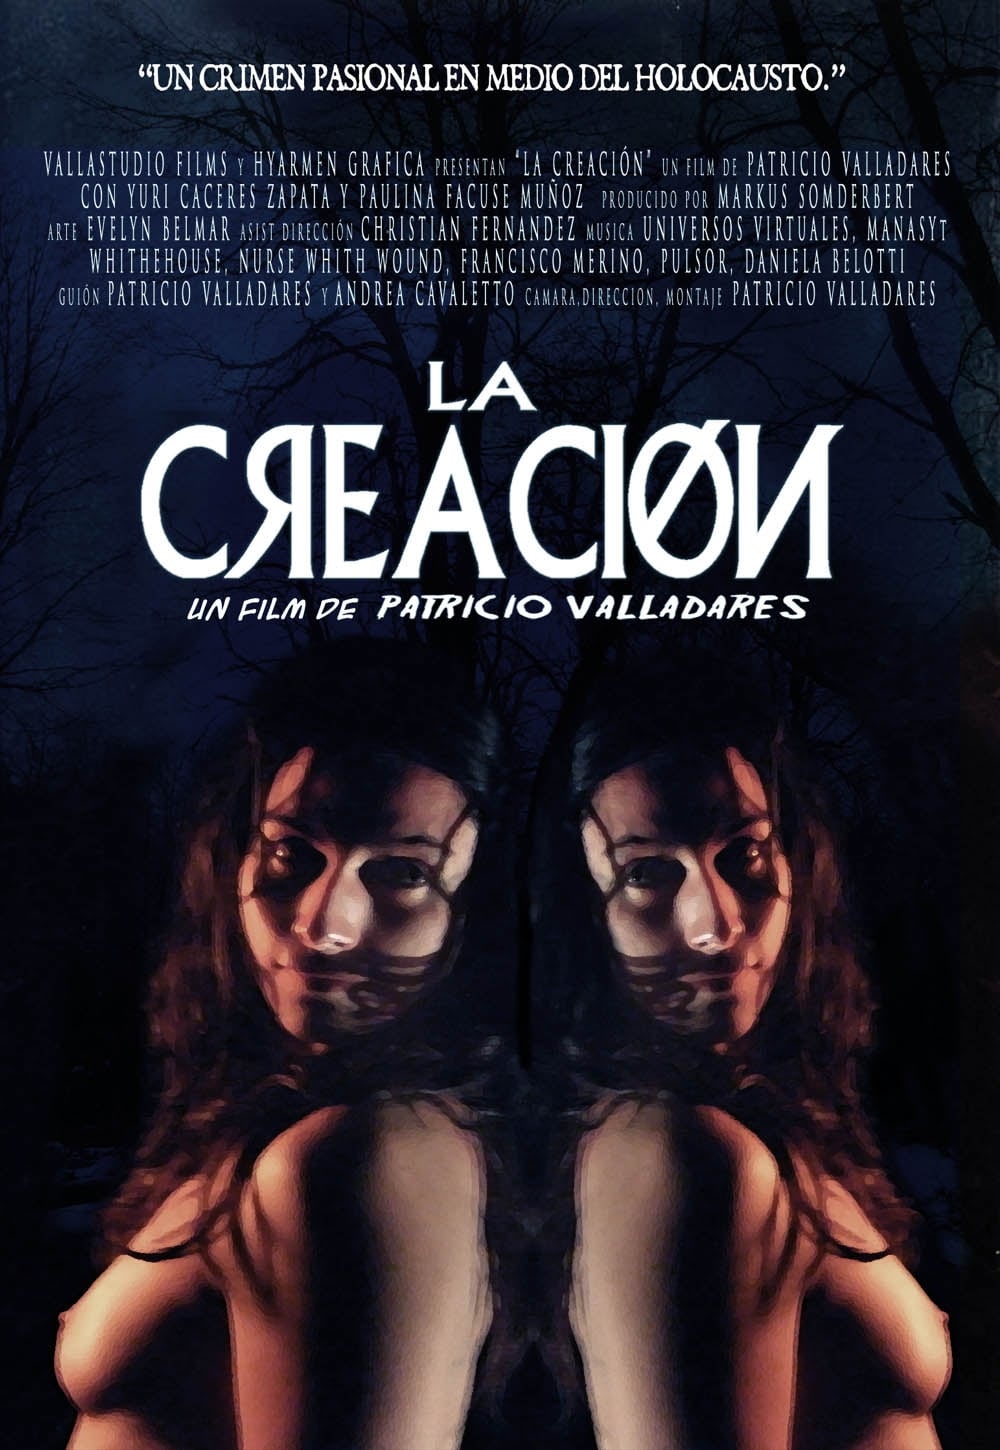 La creacion (2009)